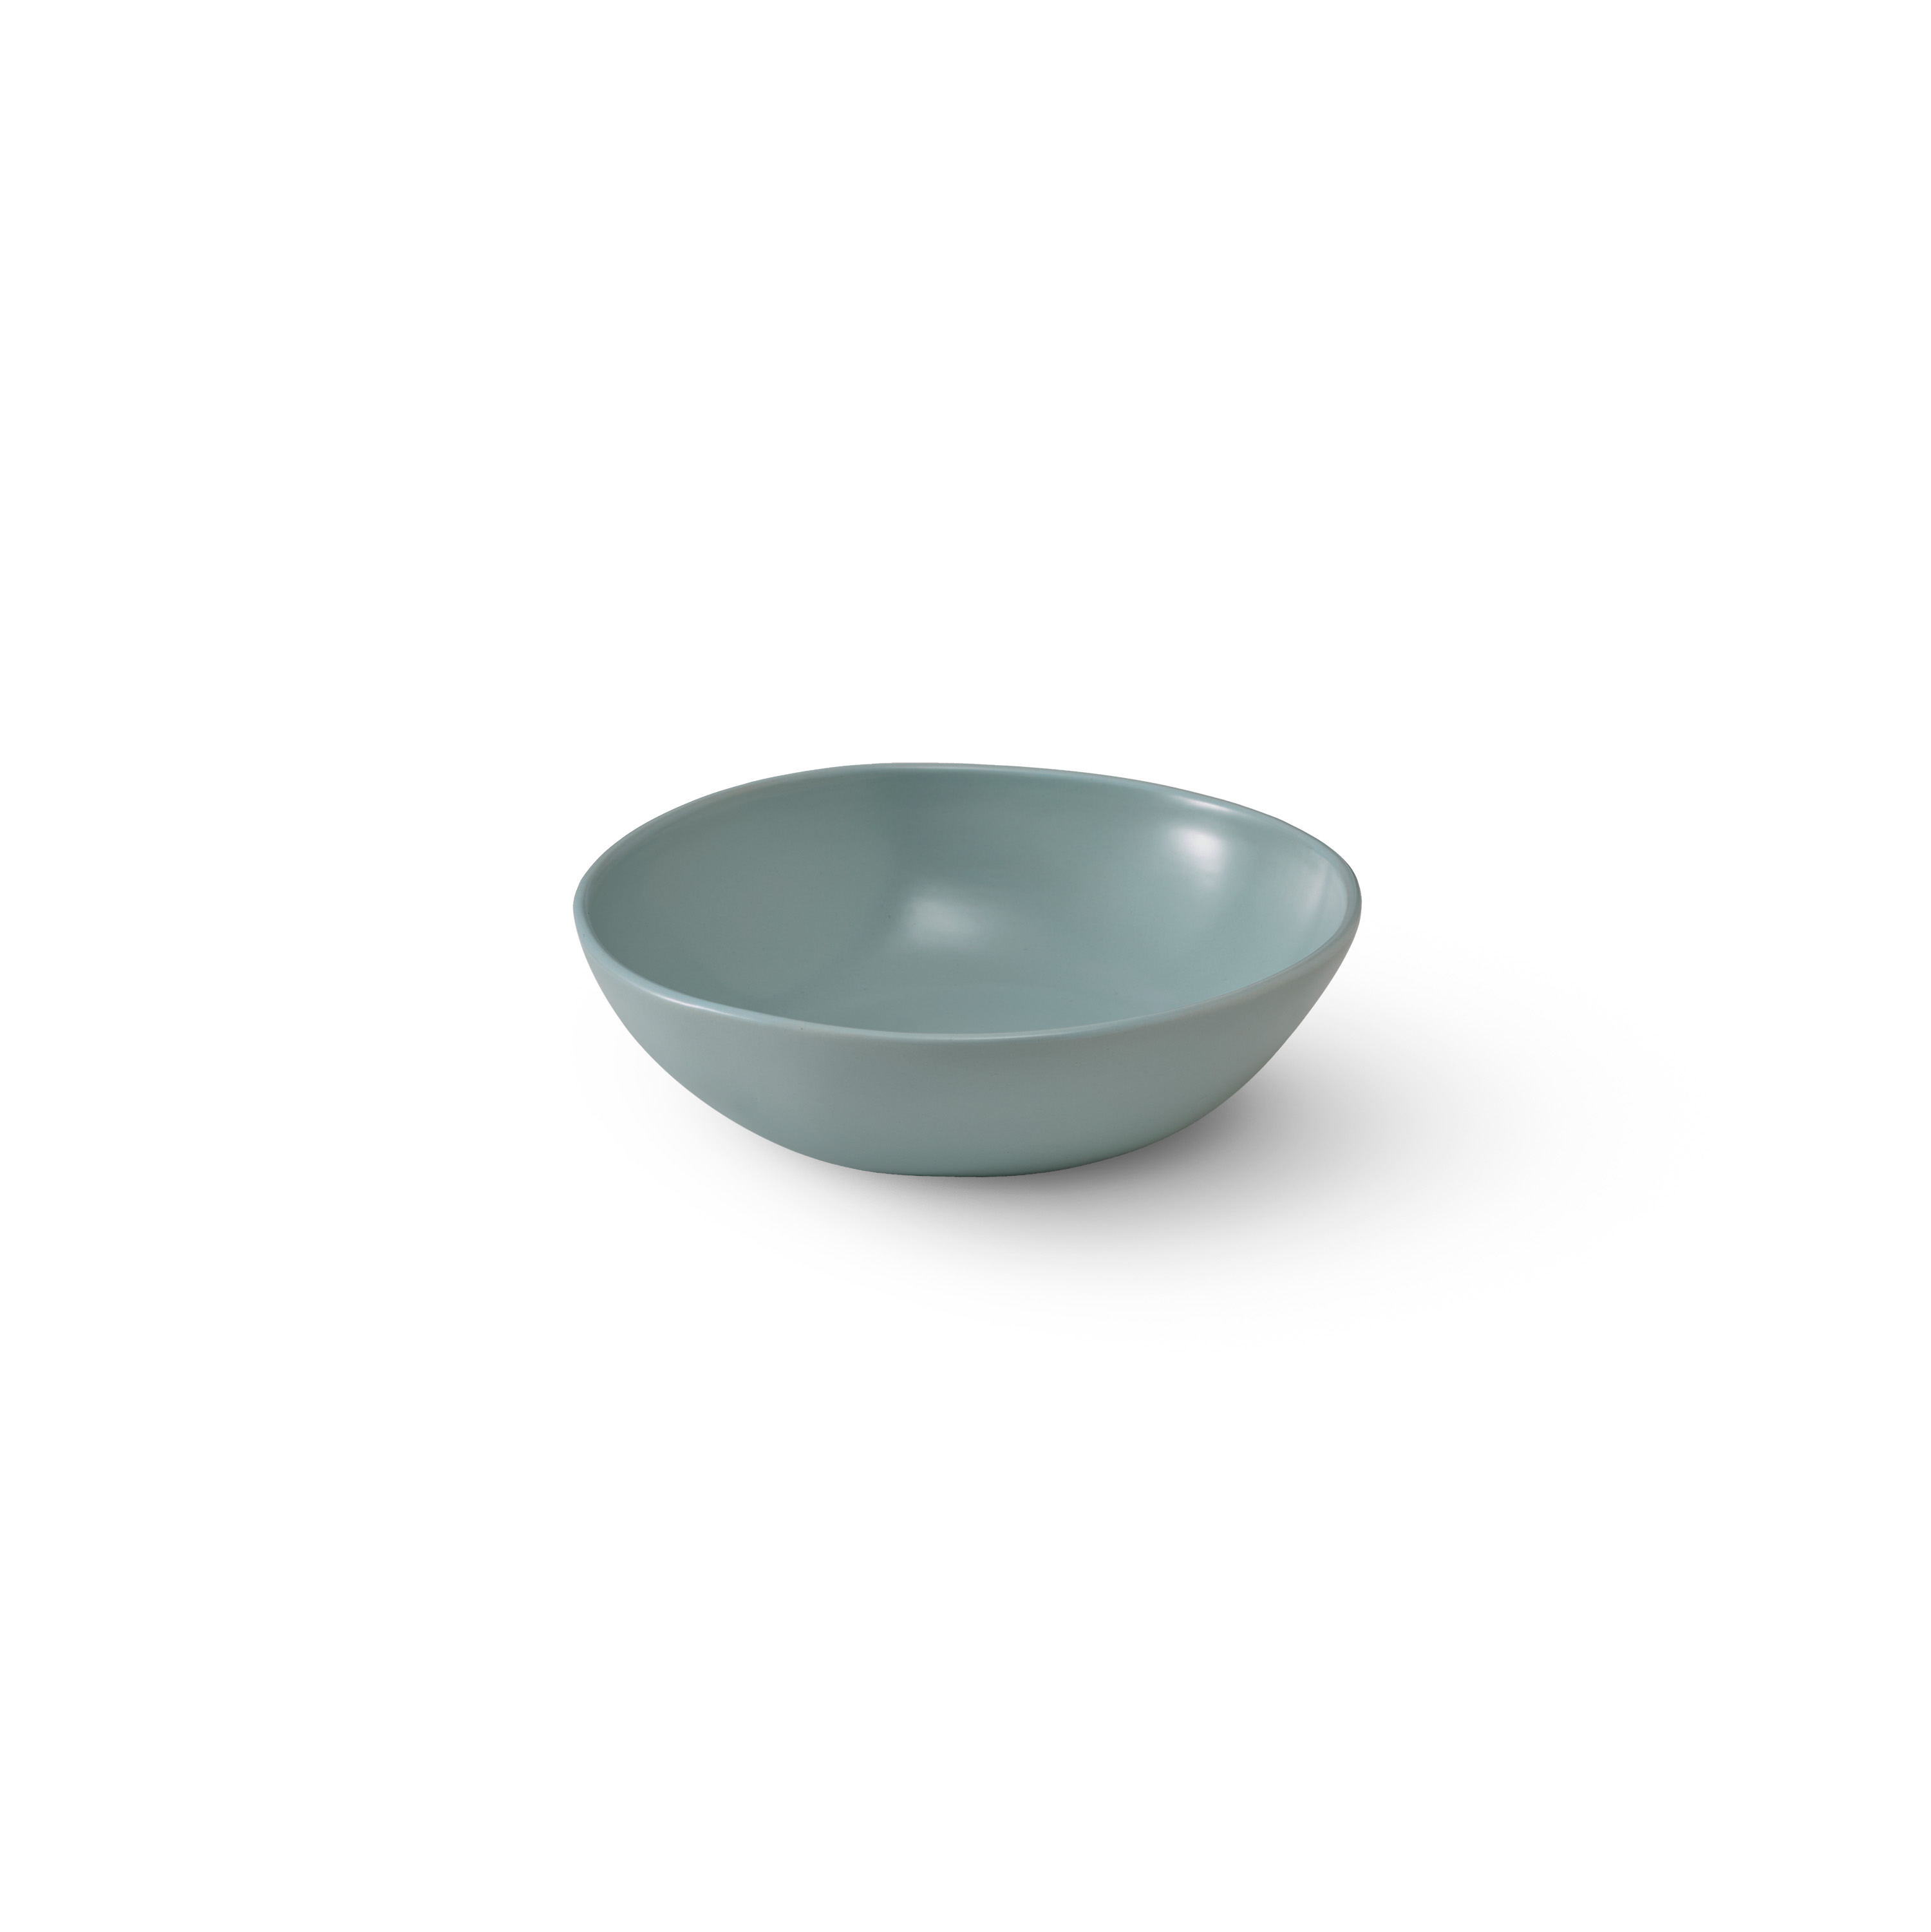 Tonkin Bowl S: Light blue